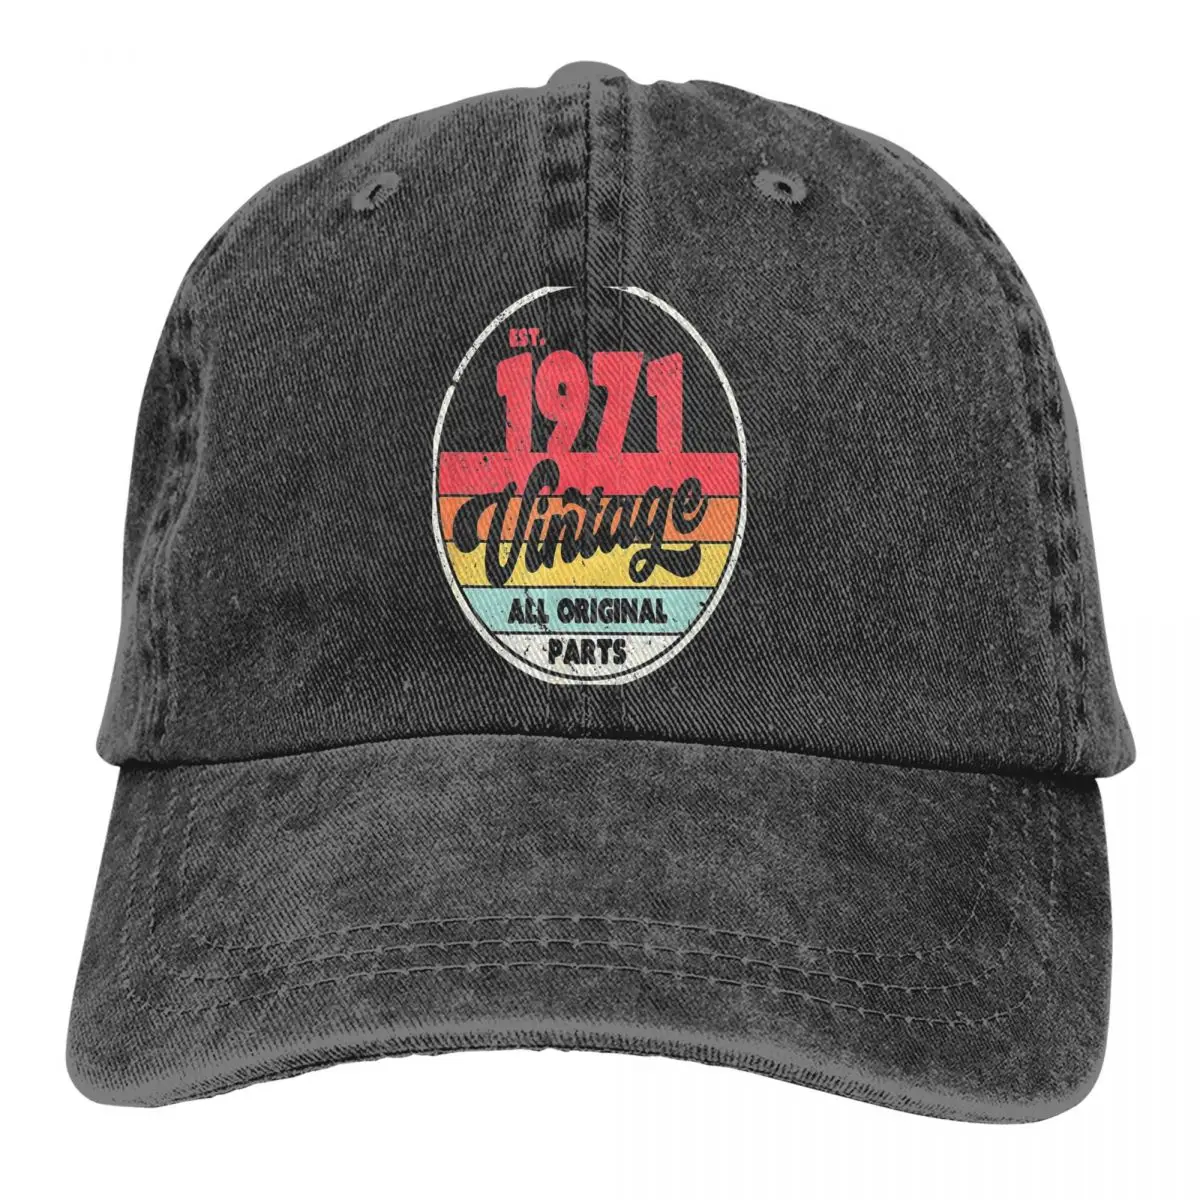 

Summer Cap Sun Visor Style Hip Hop Caps Vintage 1971 Culture Cowboy Hat Peaked Hats